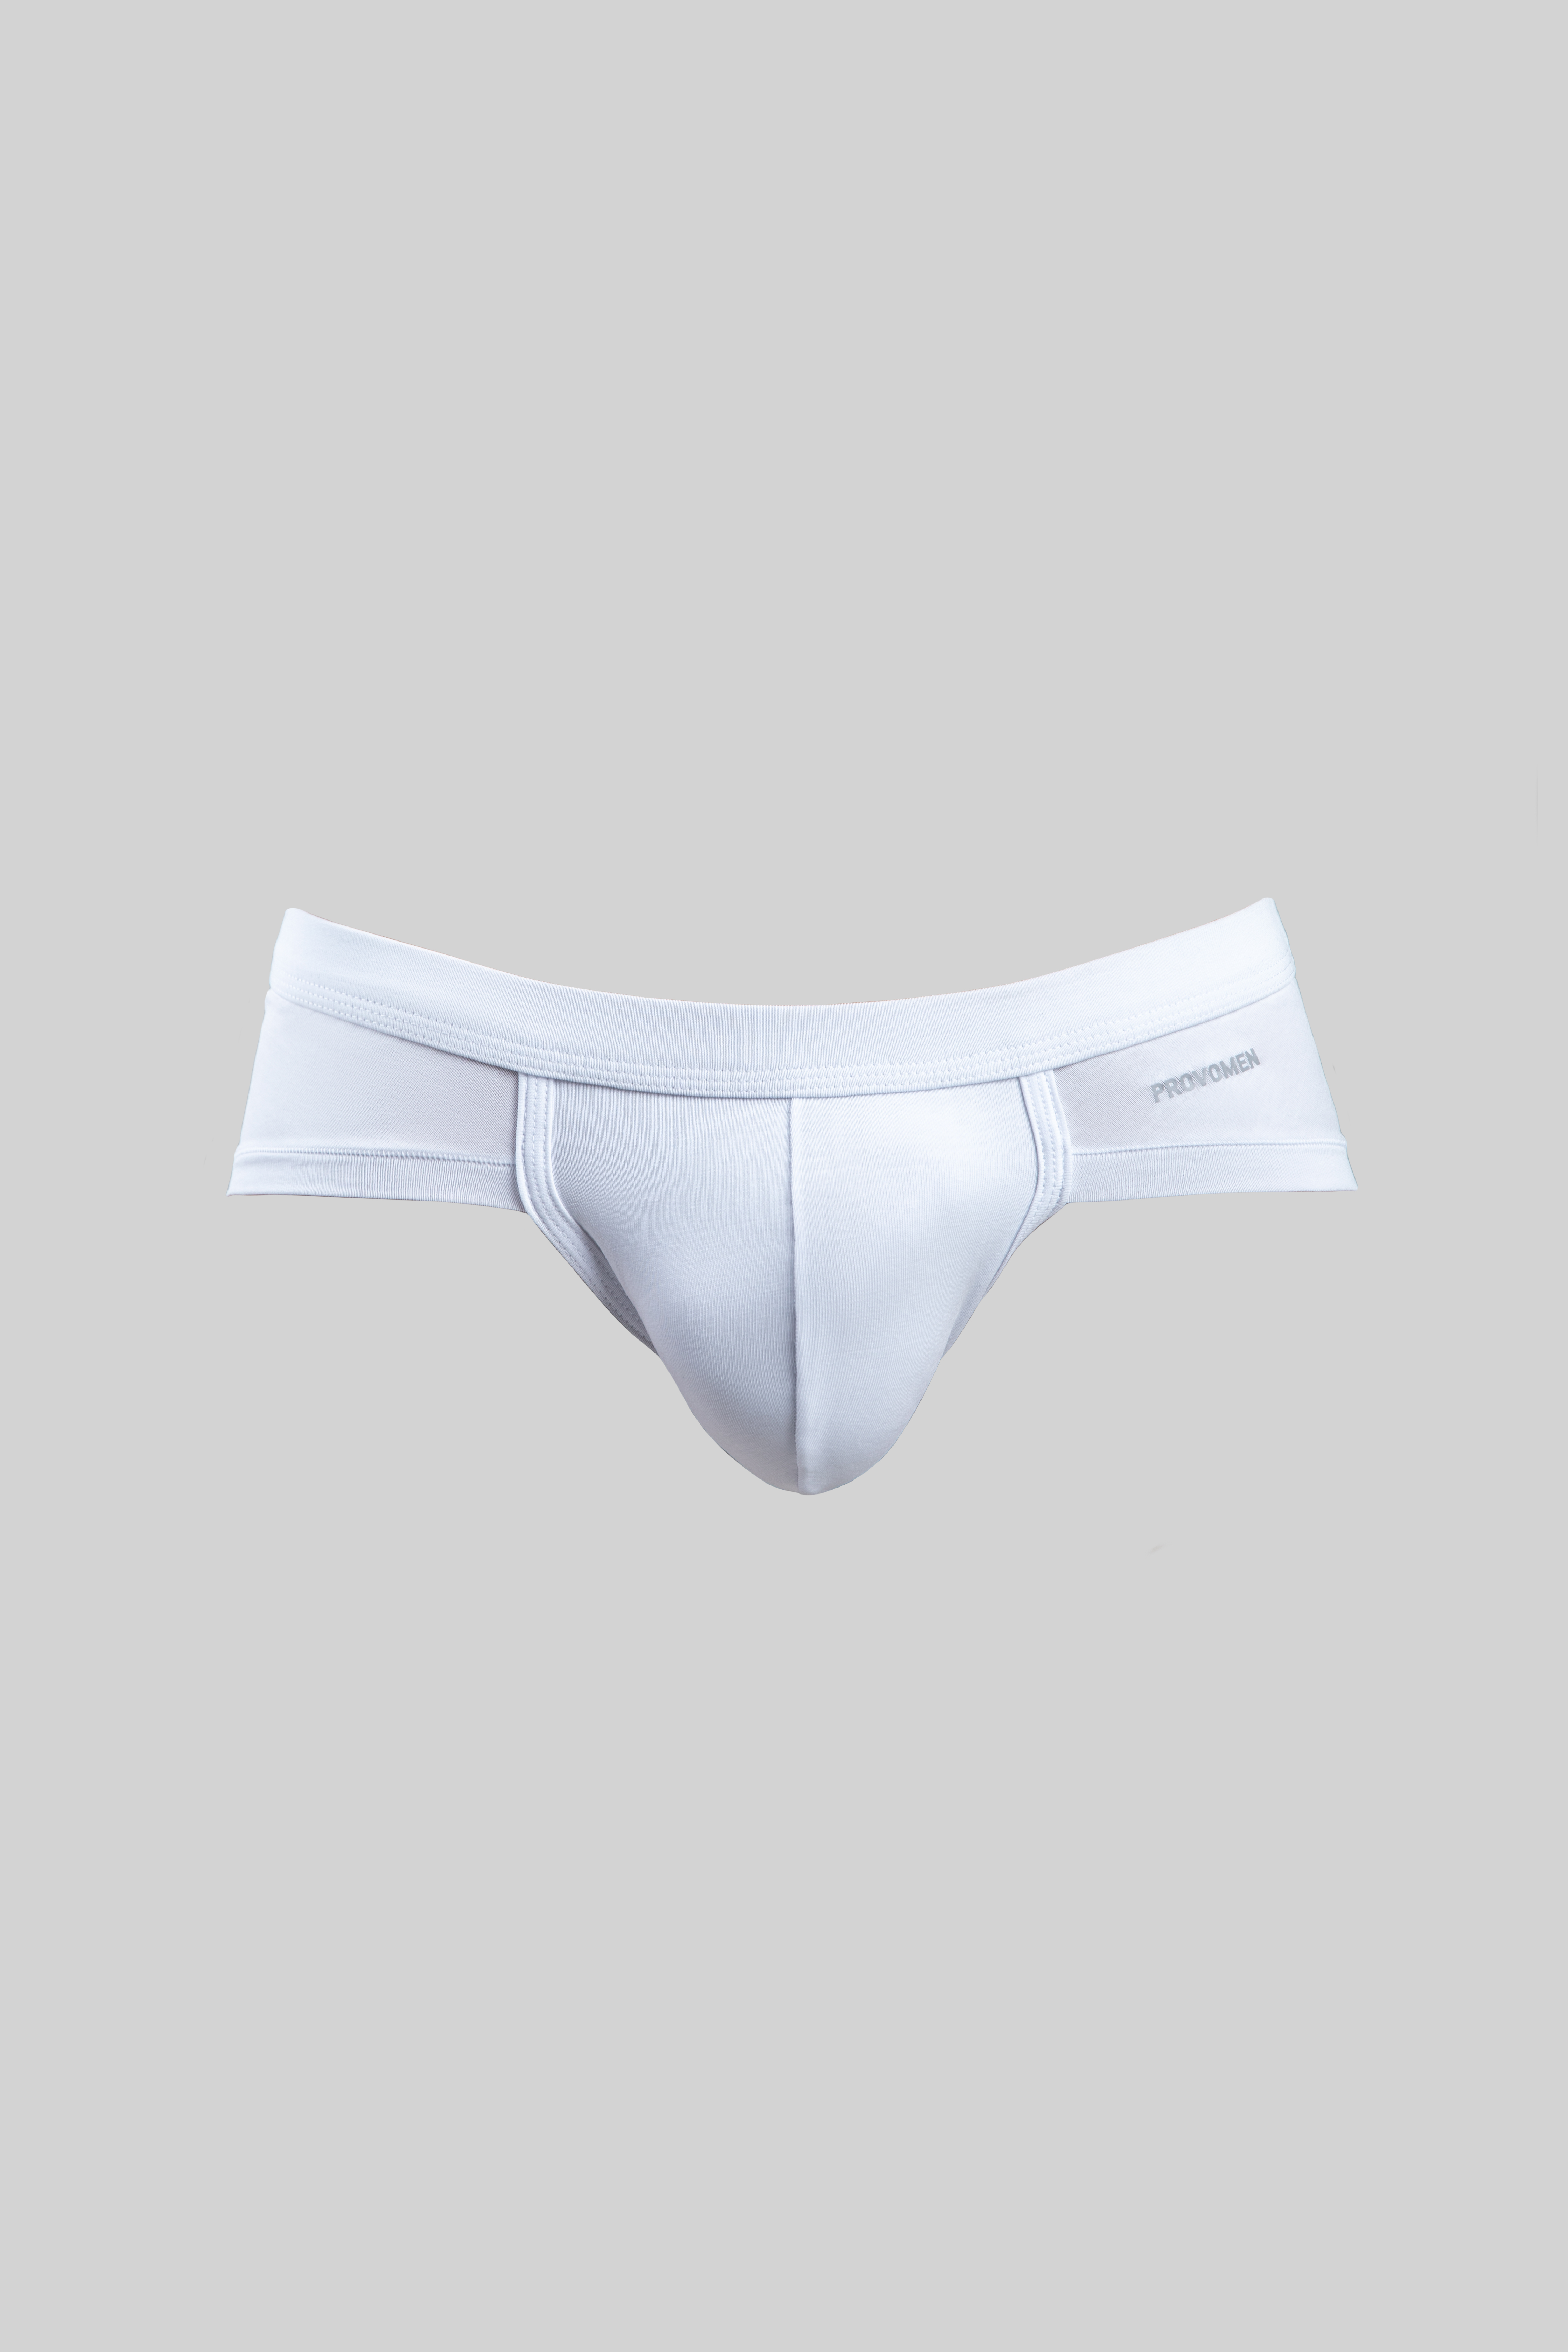 Hipster Briefs (White) - official online store of men's underwear